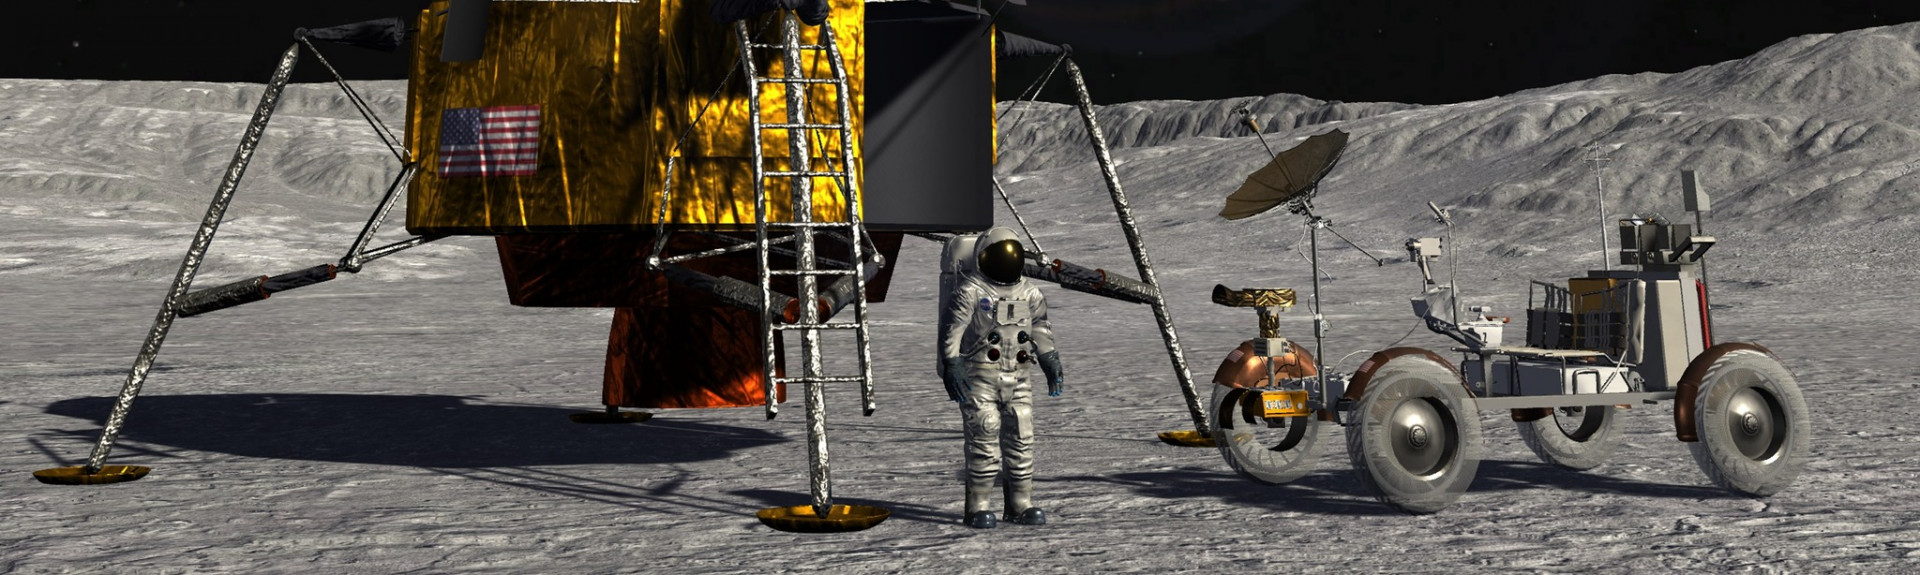 Lunar Exploration: Past